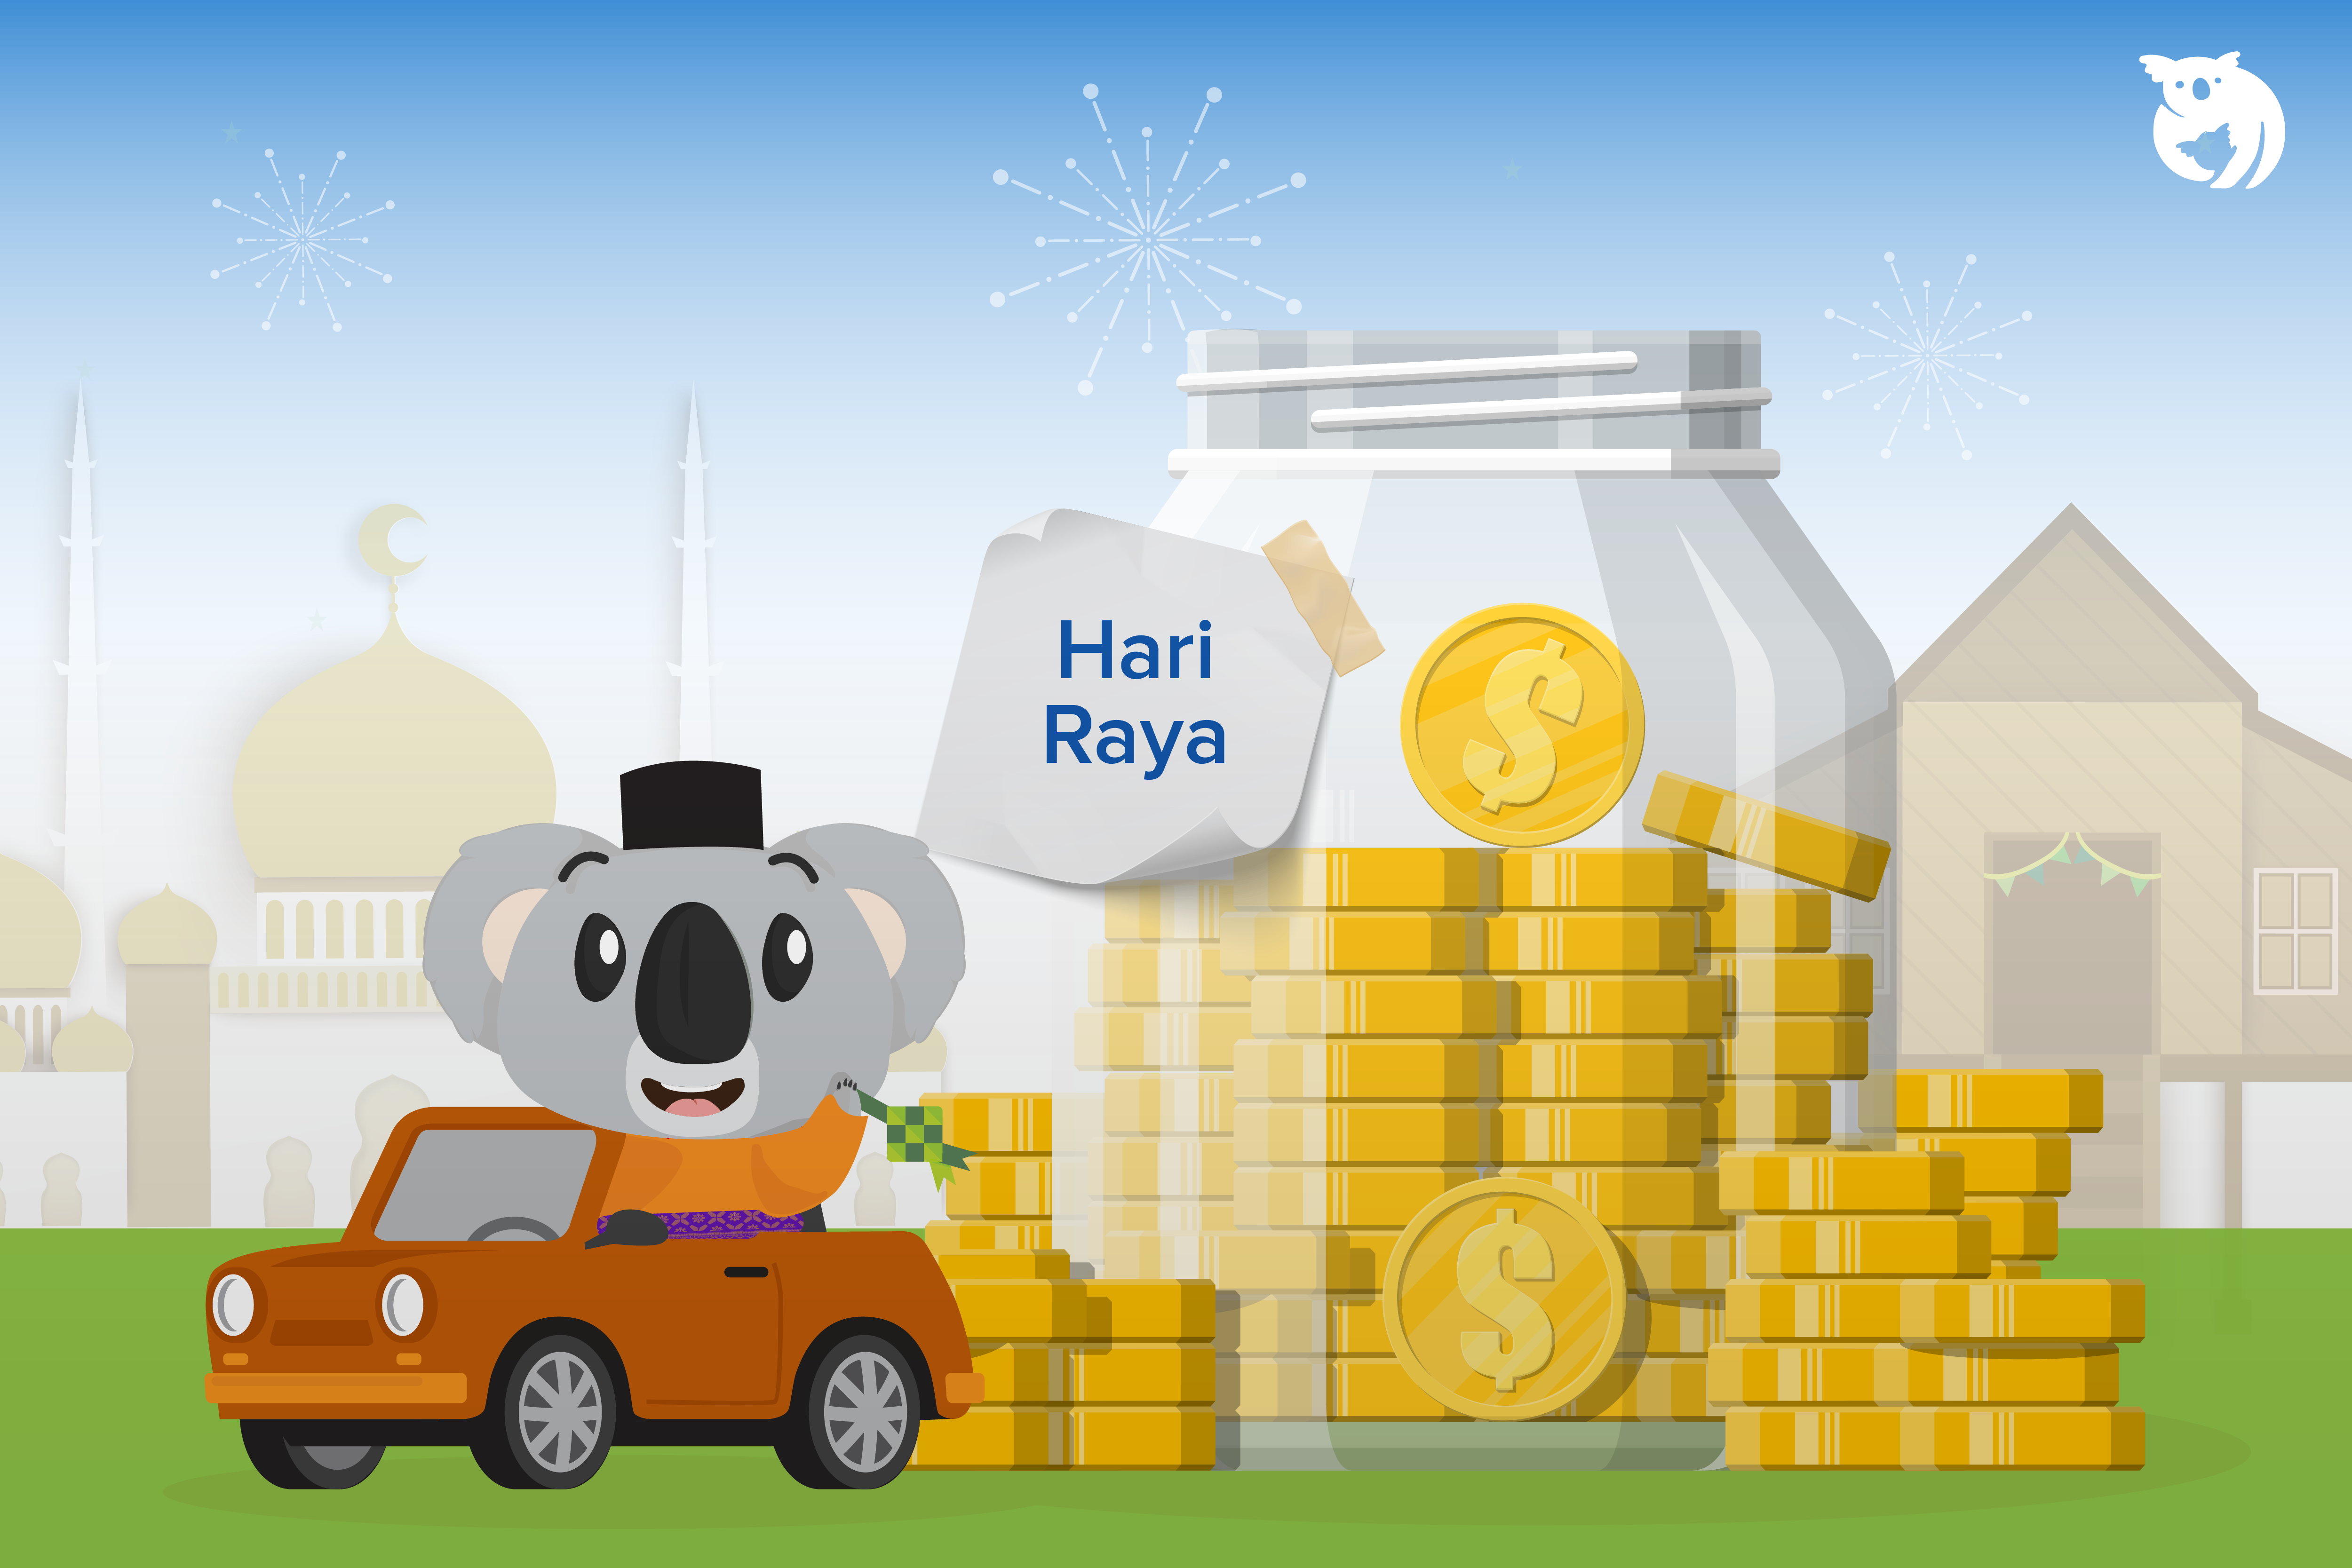 7 Tips to Save Money During Hari Raya